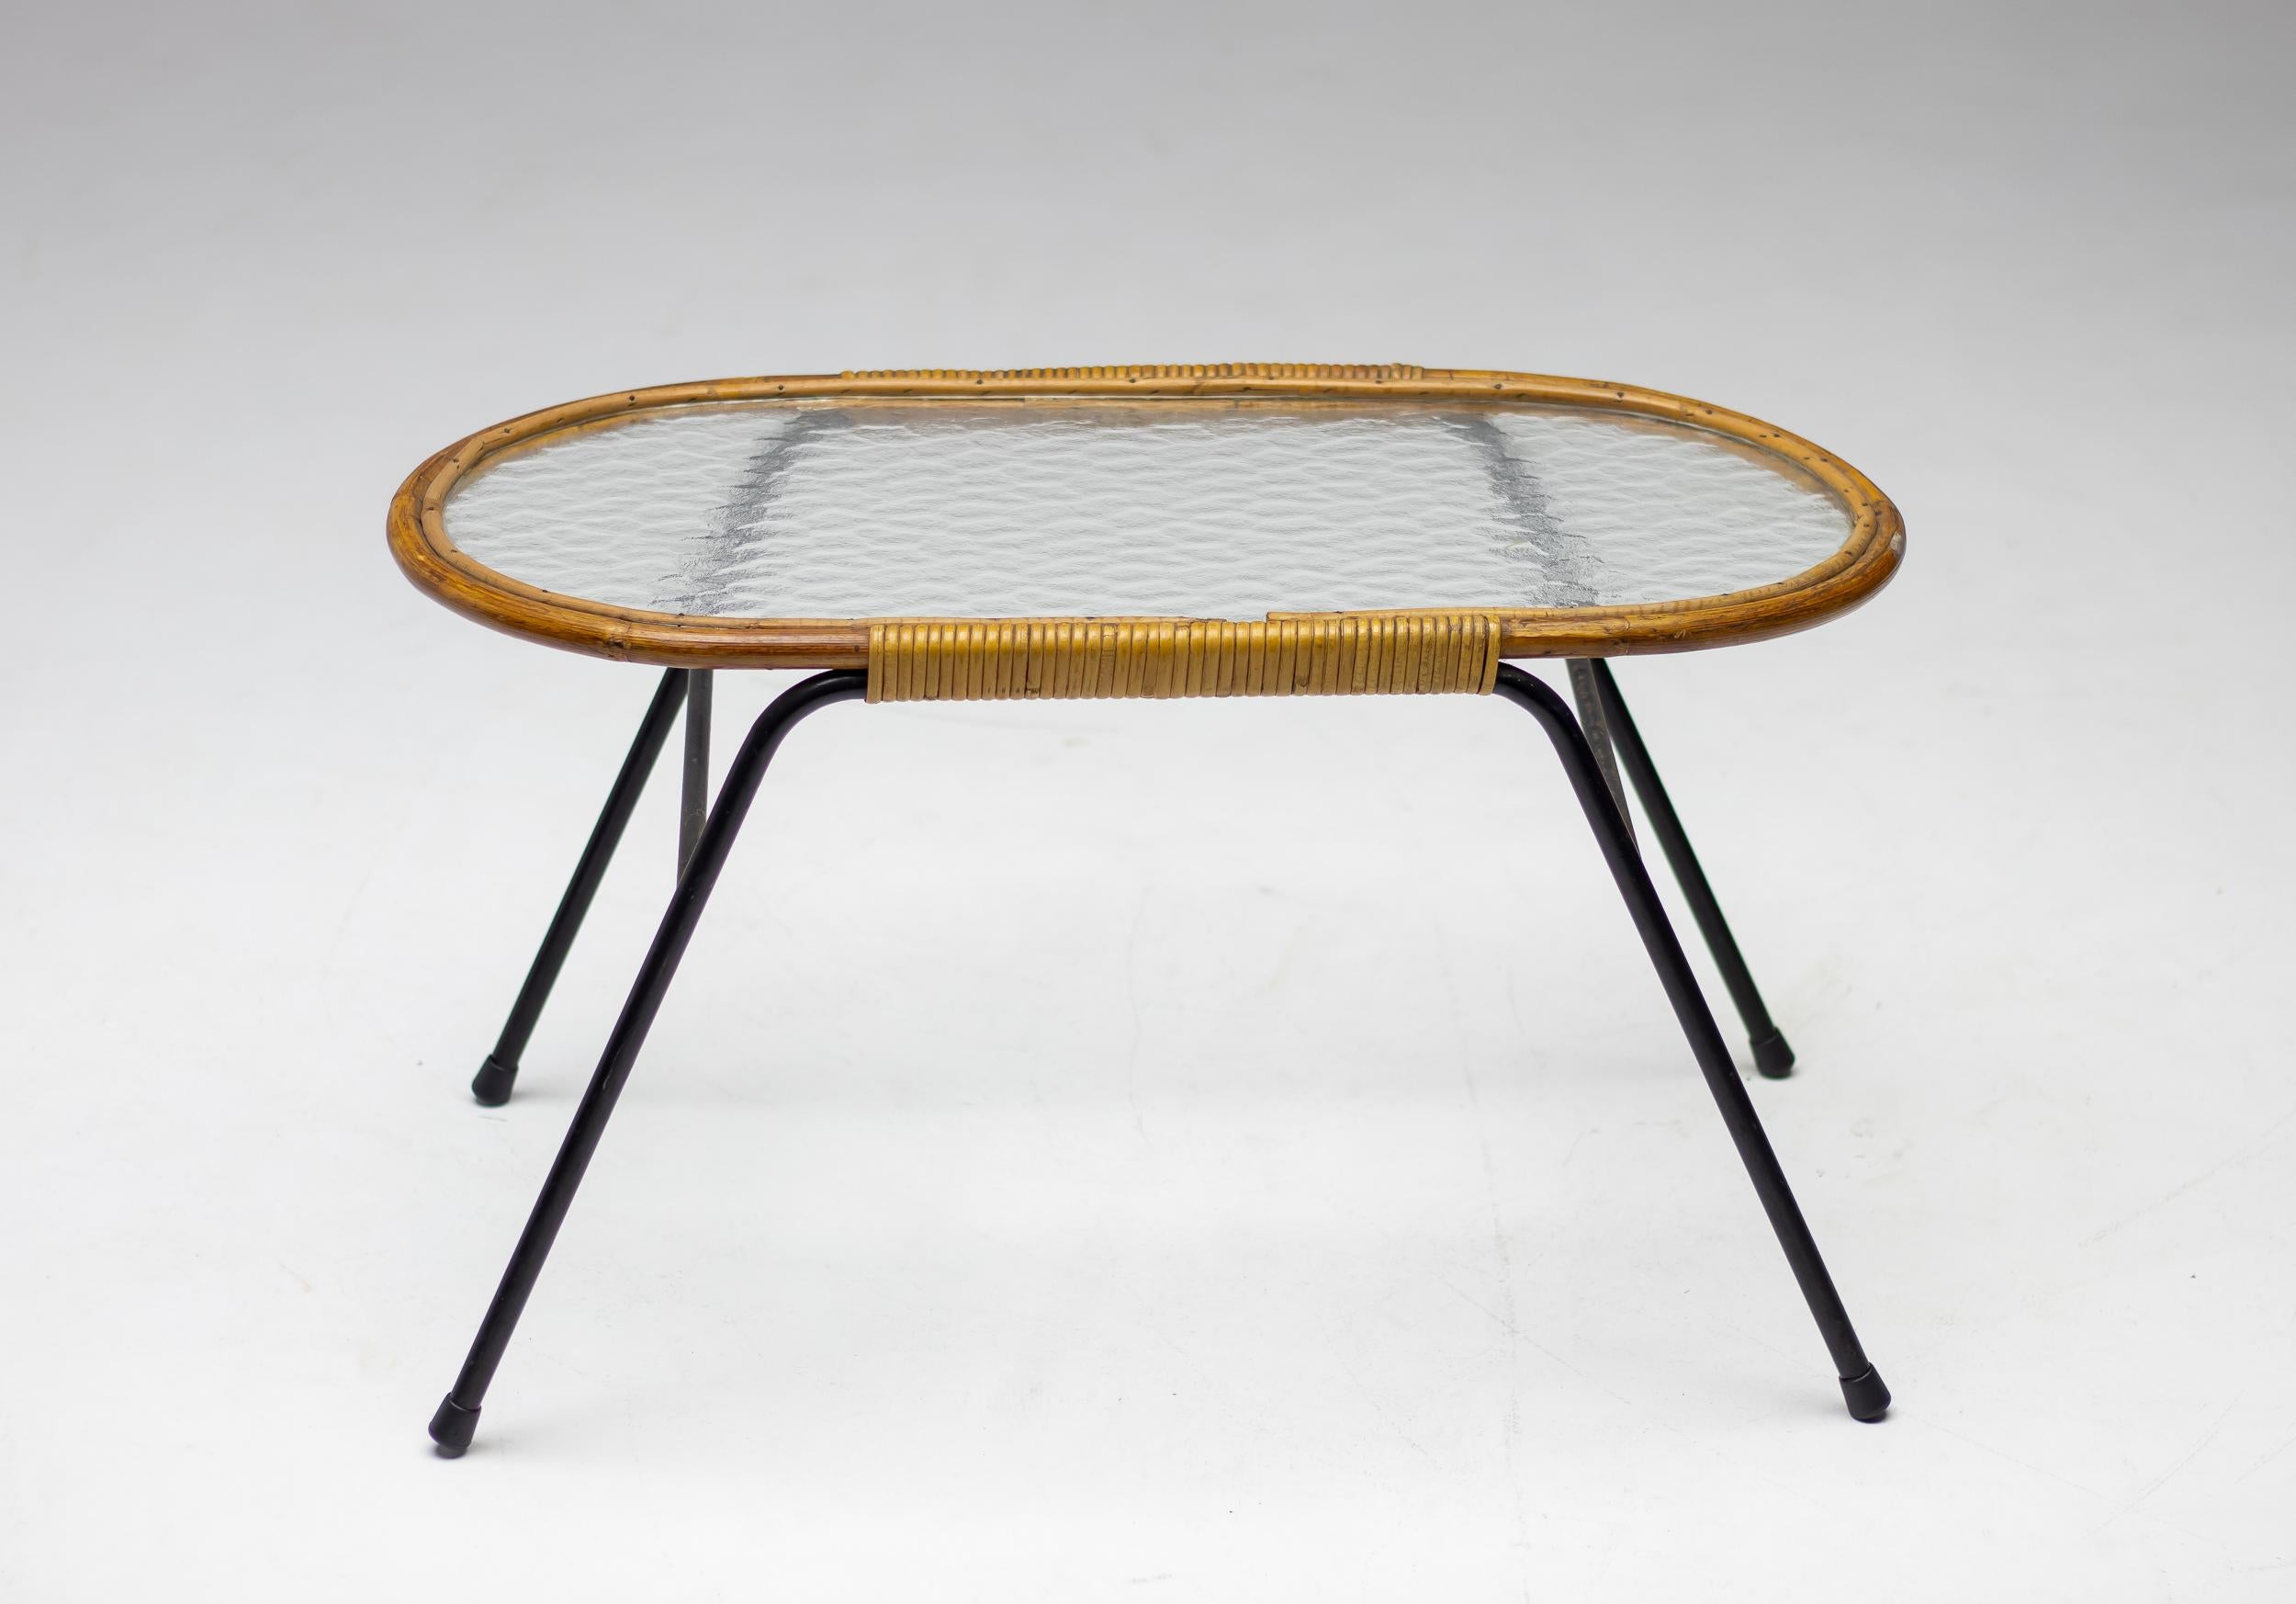 Dirk van Sliedregt ovaler Beistelltisch aus strukturiertem Glas und Rattan für Rohé Noordwolde, Niederlande.
Schöner minimalistischer niederländischer Mid-Century Modern Tisch.

Dirk van Sliedregt (1920 - 2010) verband seine Arbeit als Möbeldesigner